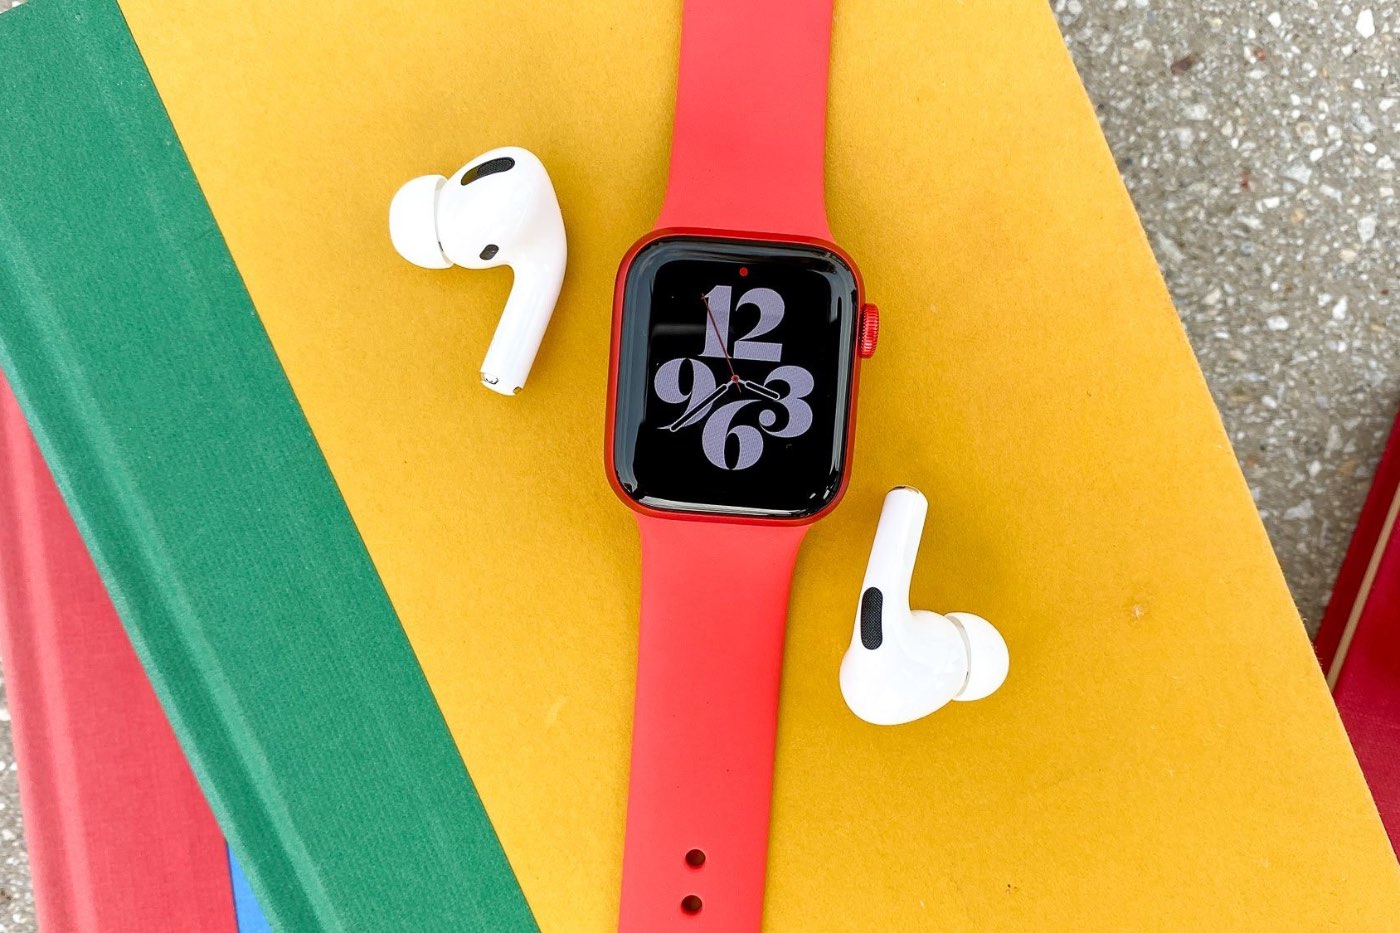 Вышли первые обзоры Apple Watch Series 6. Хорошие часы стали лучше